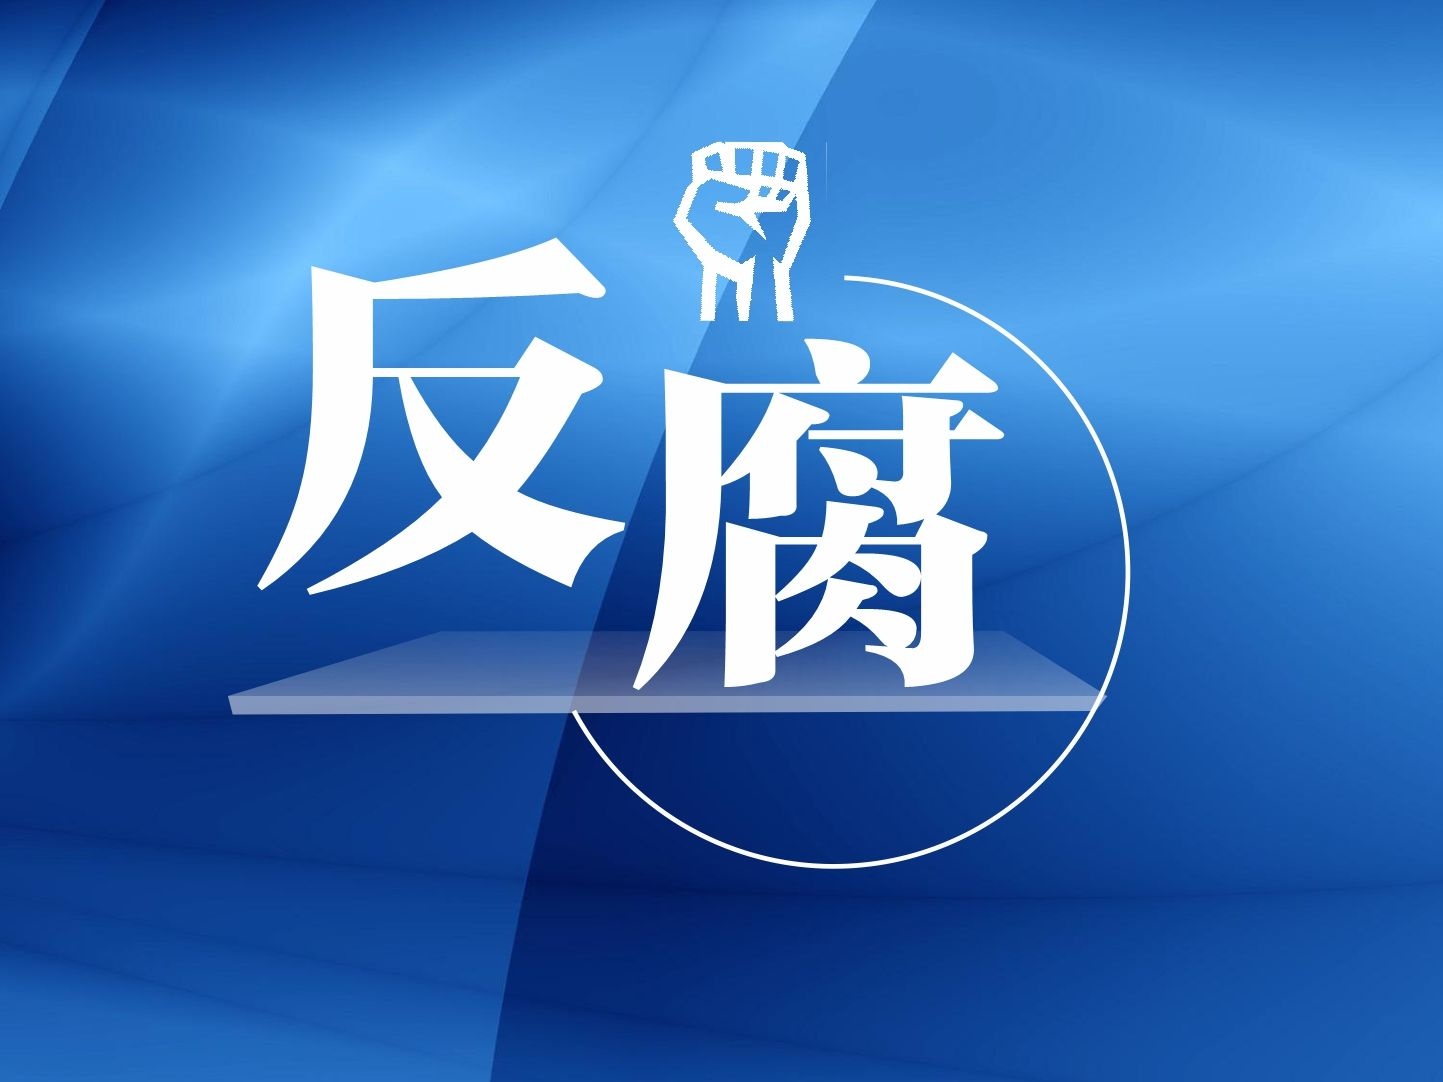 湛江市赤坎区委书记杨柔彦接受纪律审查和监察调查